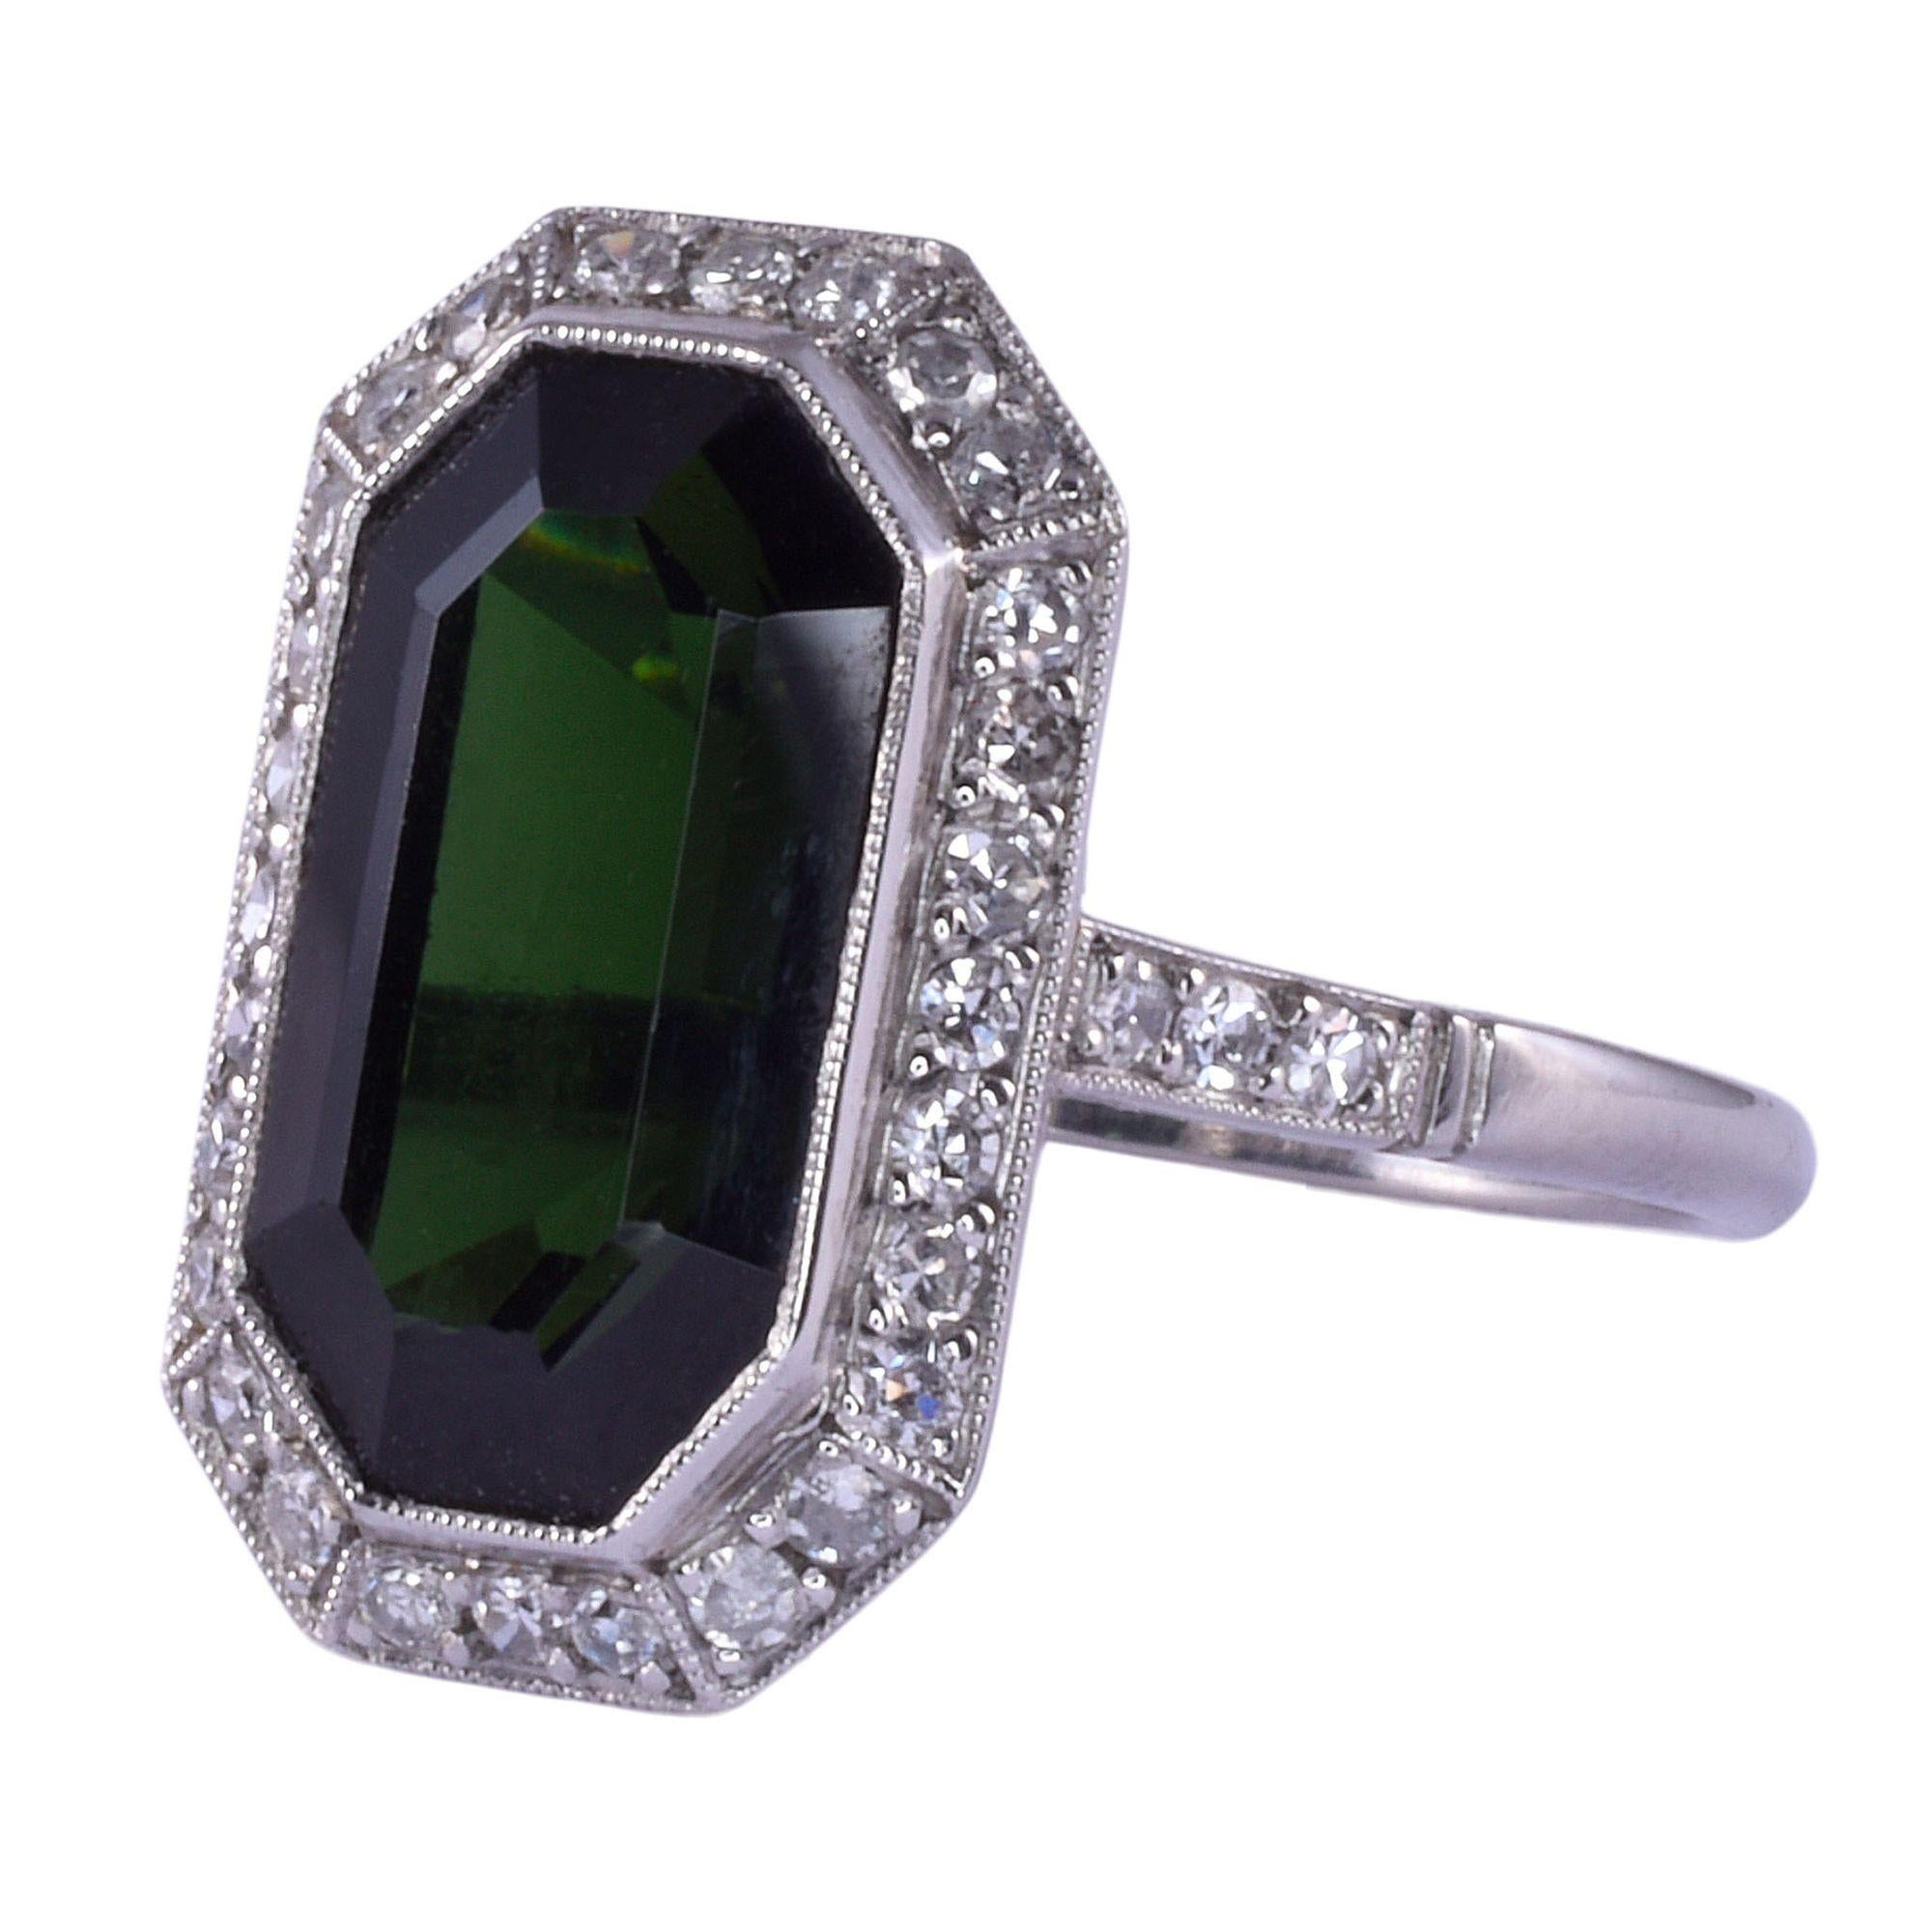 Vintage Art Deco Ring aus Platin mit dunkelgrünem Turmalin, um 1930. Dieser Art-Déco-Ring ist aus Platin gefertigt und zeigt einen dunkelgrünen Turmalin von 4,06 Karat, der von Diamanten im Einzelschliff von 0,50 Karat Gesamtgewicht umgeben ist. Die